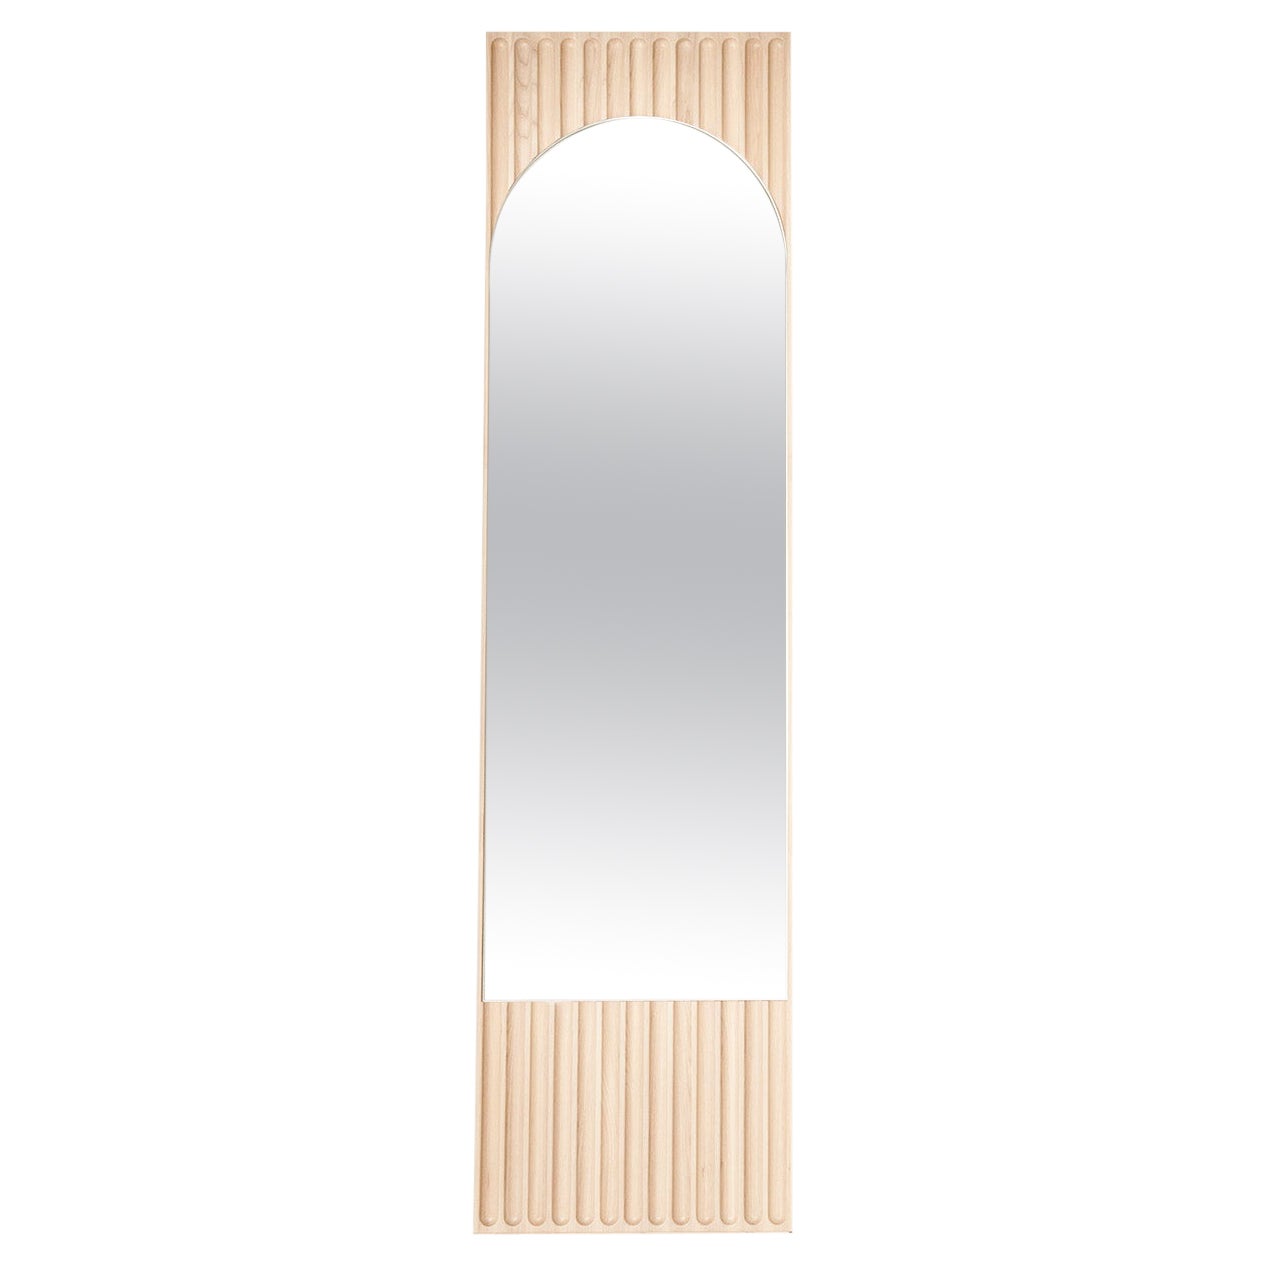 Miroir rectangulaire Tutto Sesto en bois massif, finition naturelle, contemporain